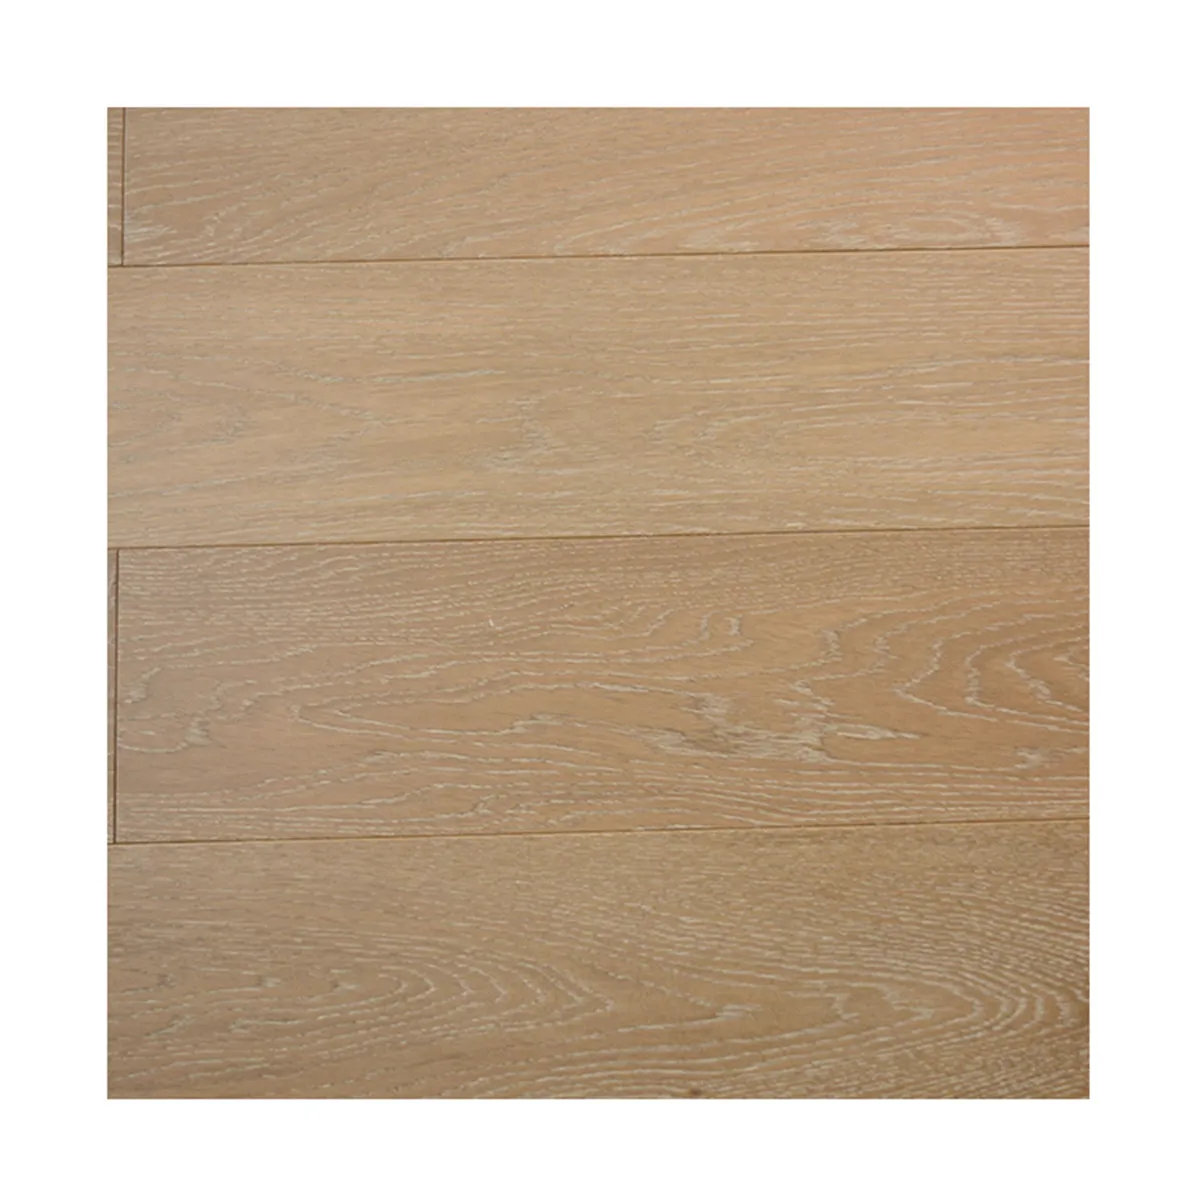 Novo produto 1820*165*14mm piso de madeira projetado piso de madeira rústica de 3 camadas de madeira de carvalho